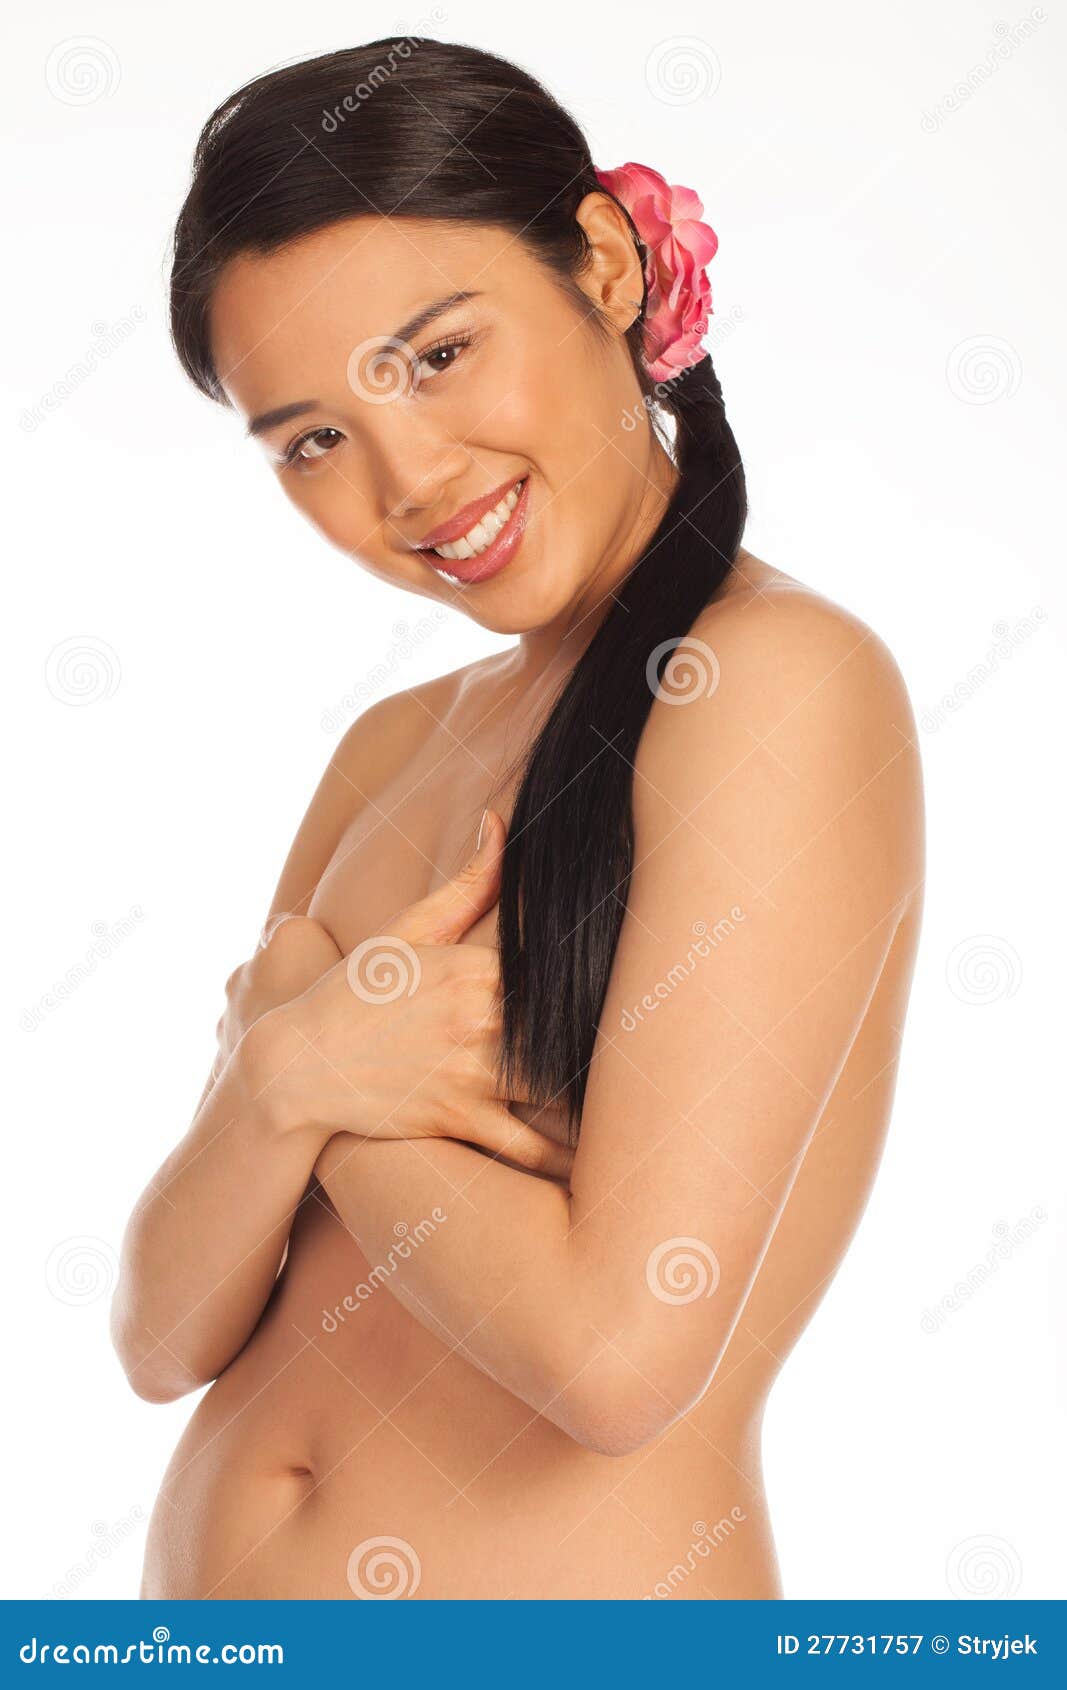 Hot Naked Asian Girl